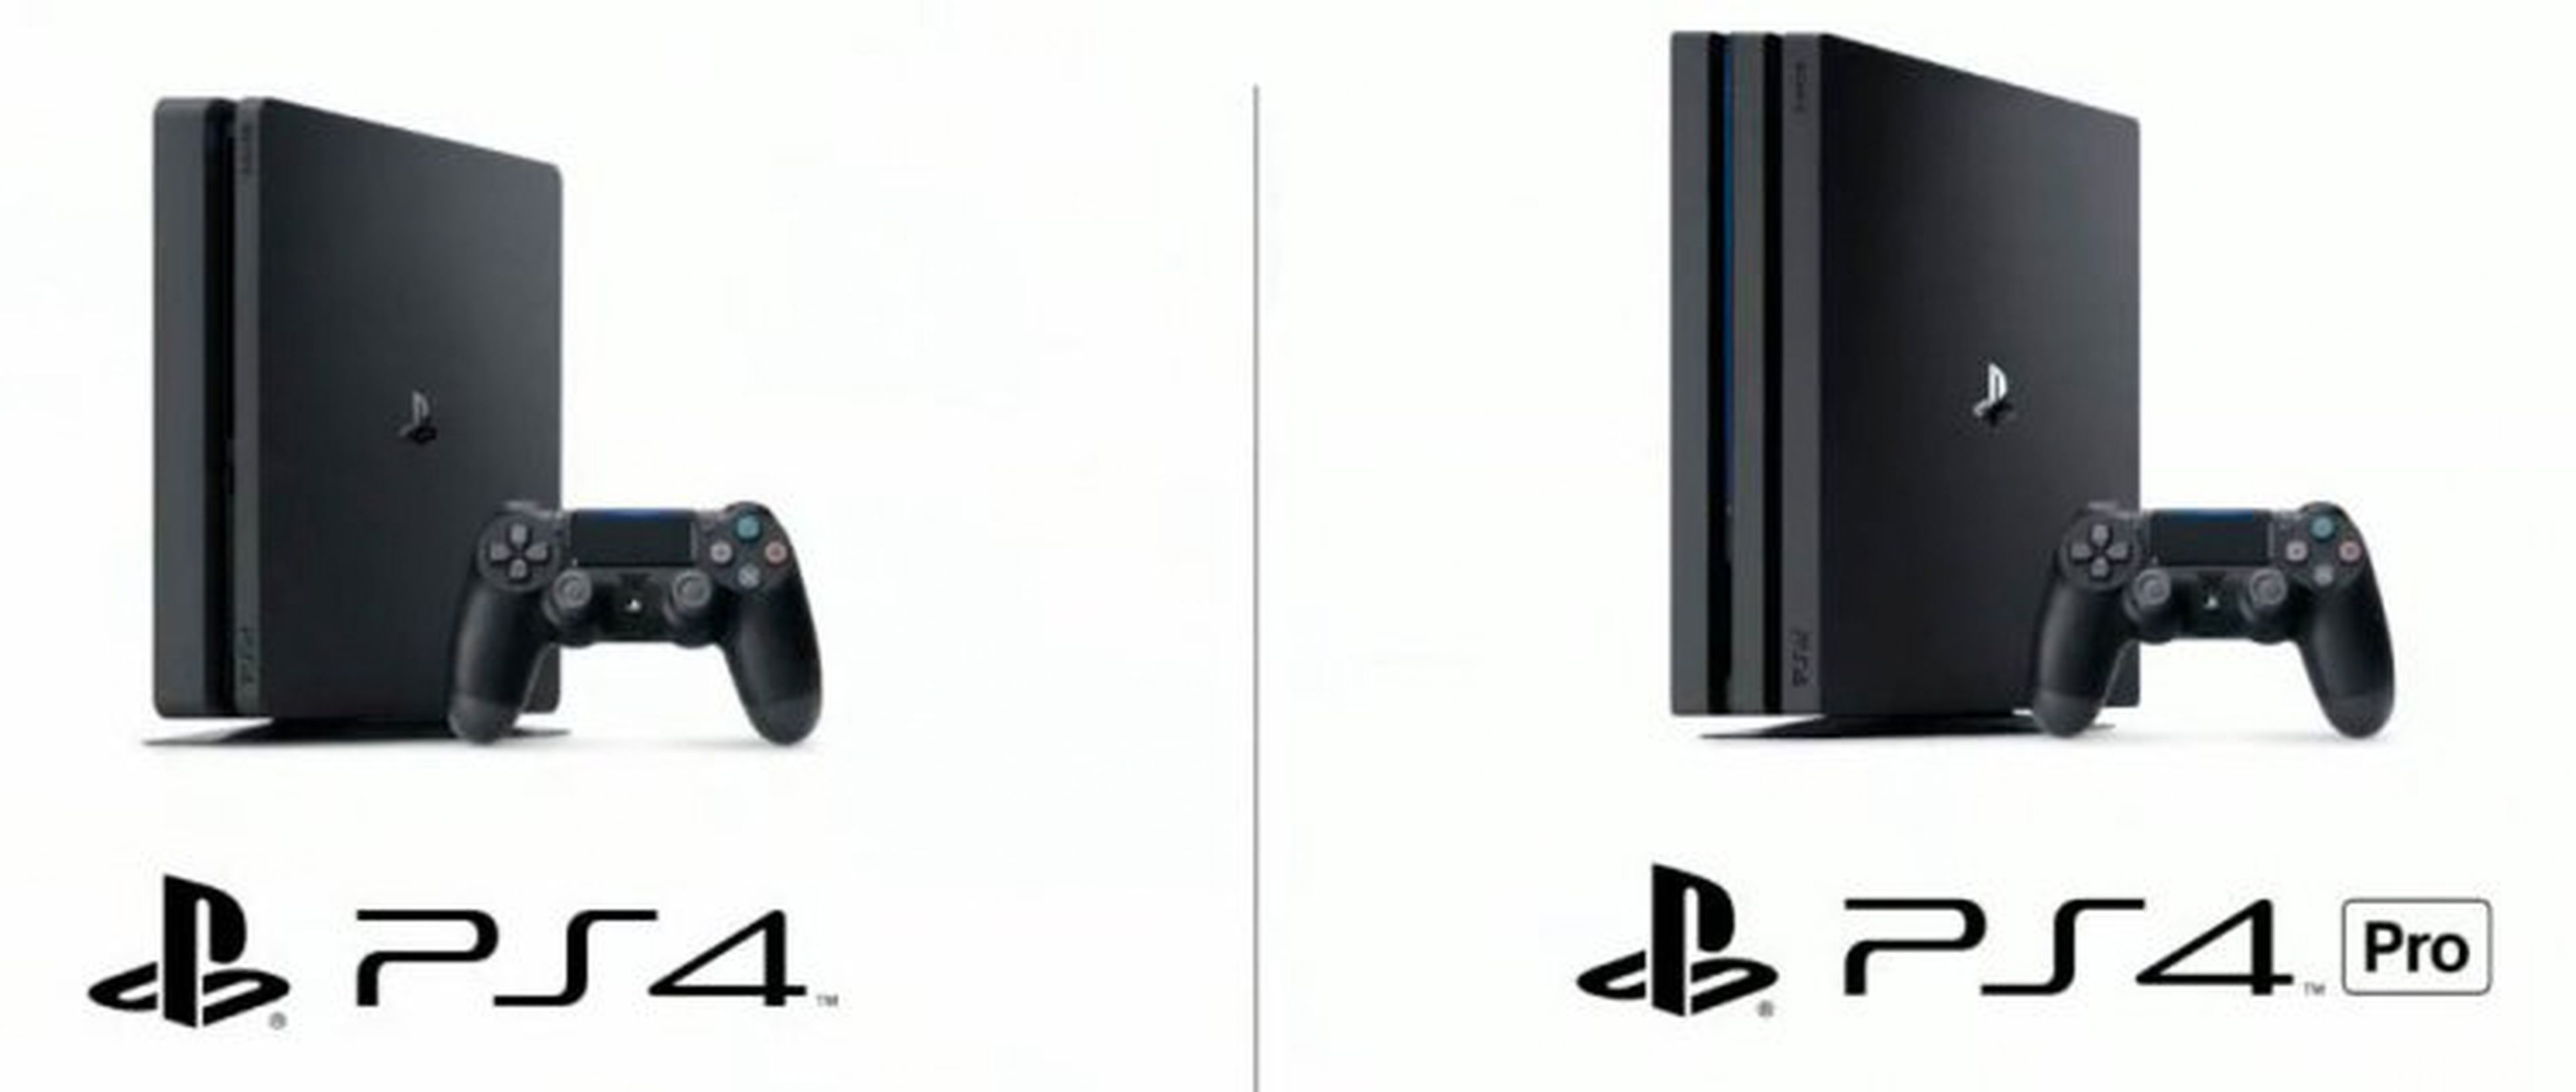 Sony tiene dos versiones de la PlayStation 4: la PS4 normal (izquierda) y la PS4 Pro (derecha).